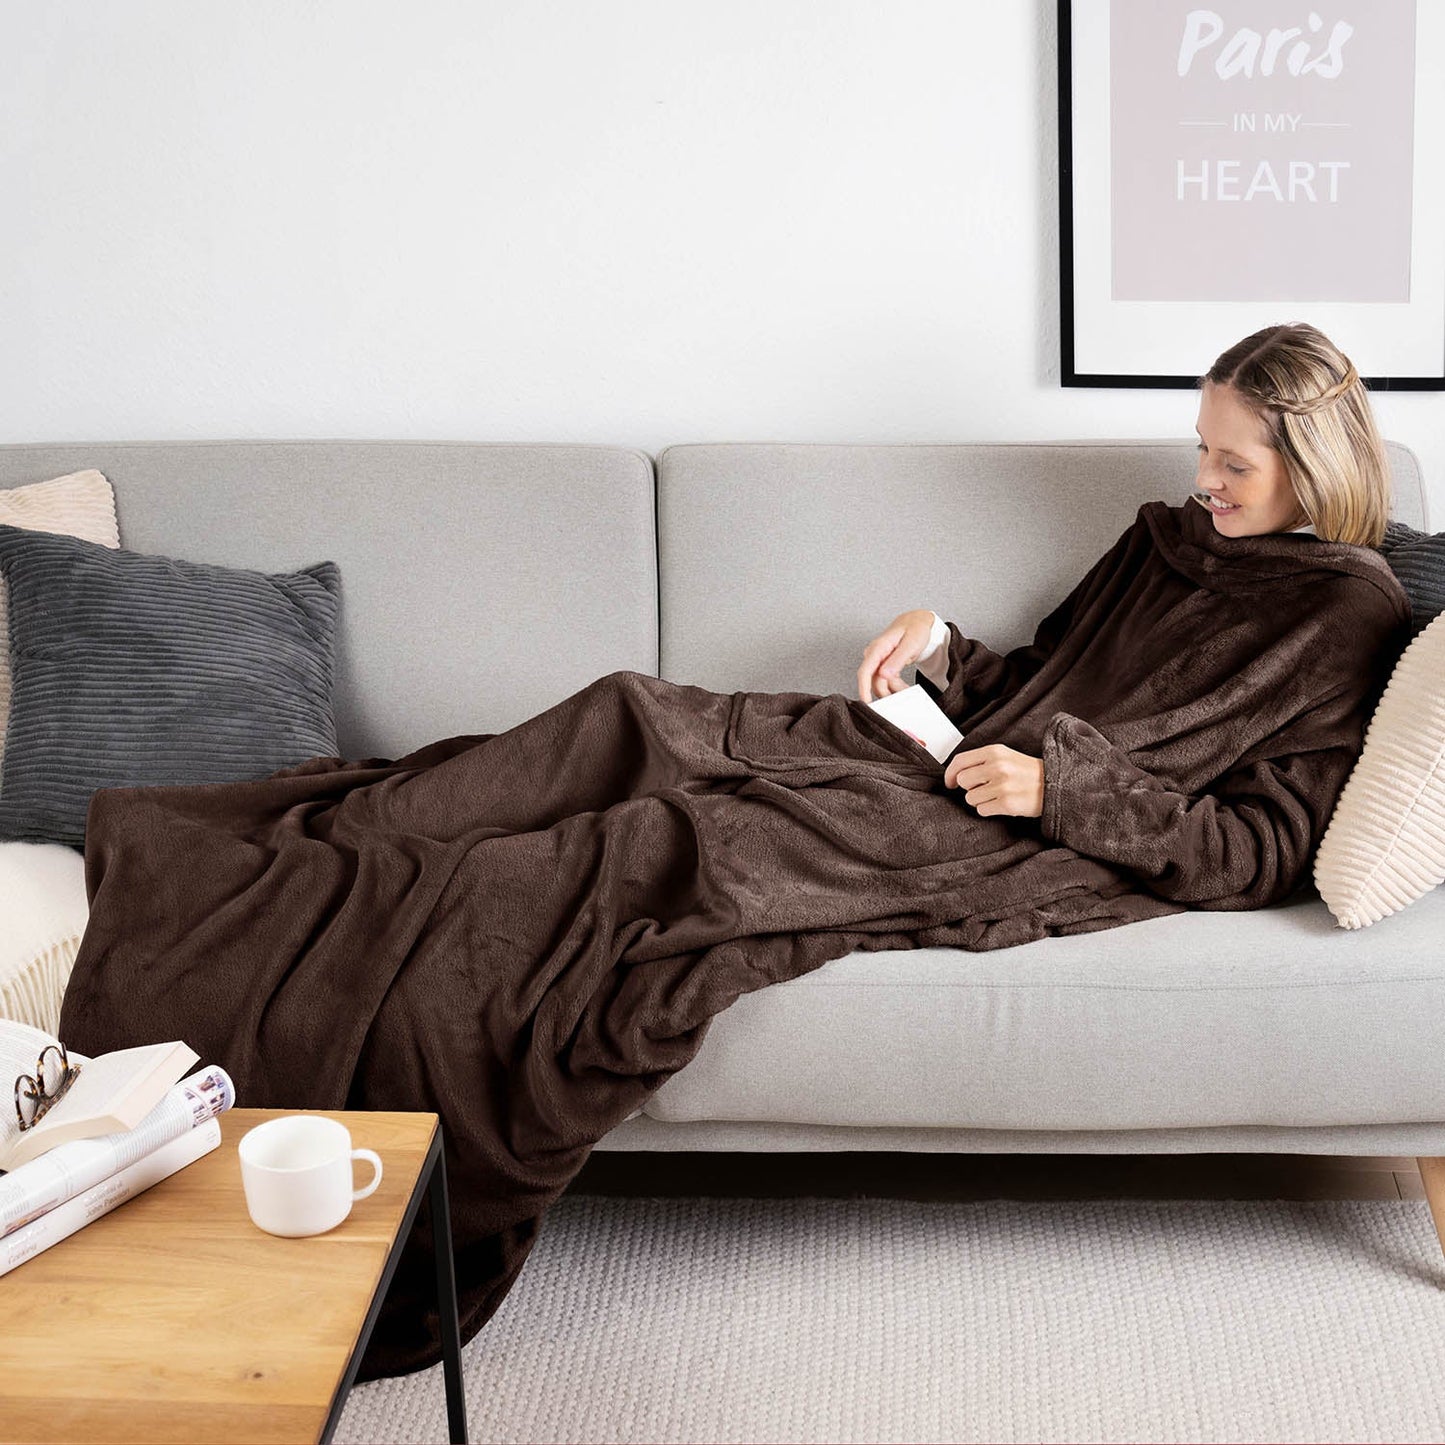 Frau liegt auf einem grauen Sofa eingehüllt in ein dunkelbraunen flauschiges Kleidungsstück und liest ein Buch mit einer Tasse auf einem Holztisch daneben.